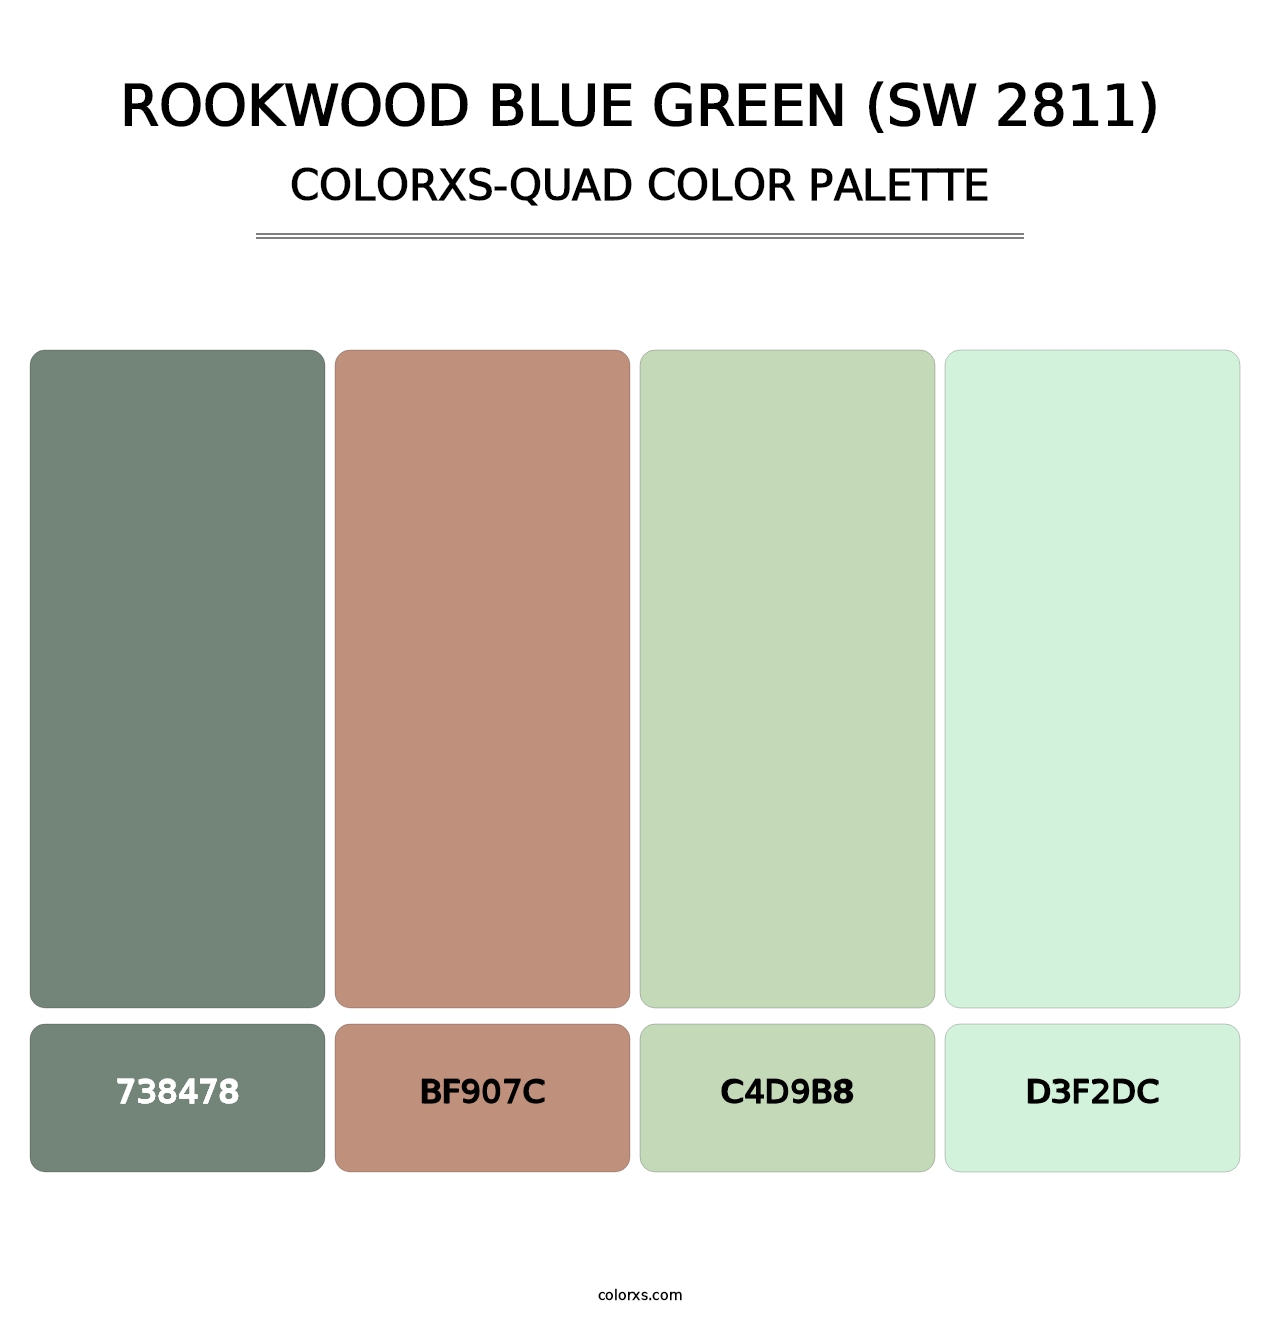 Rookwood Blue Green (SW 2811) - Colorxs Quad Palette